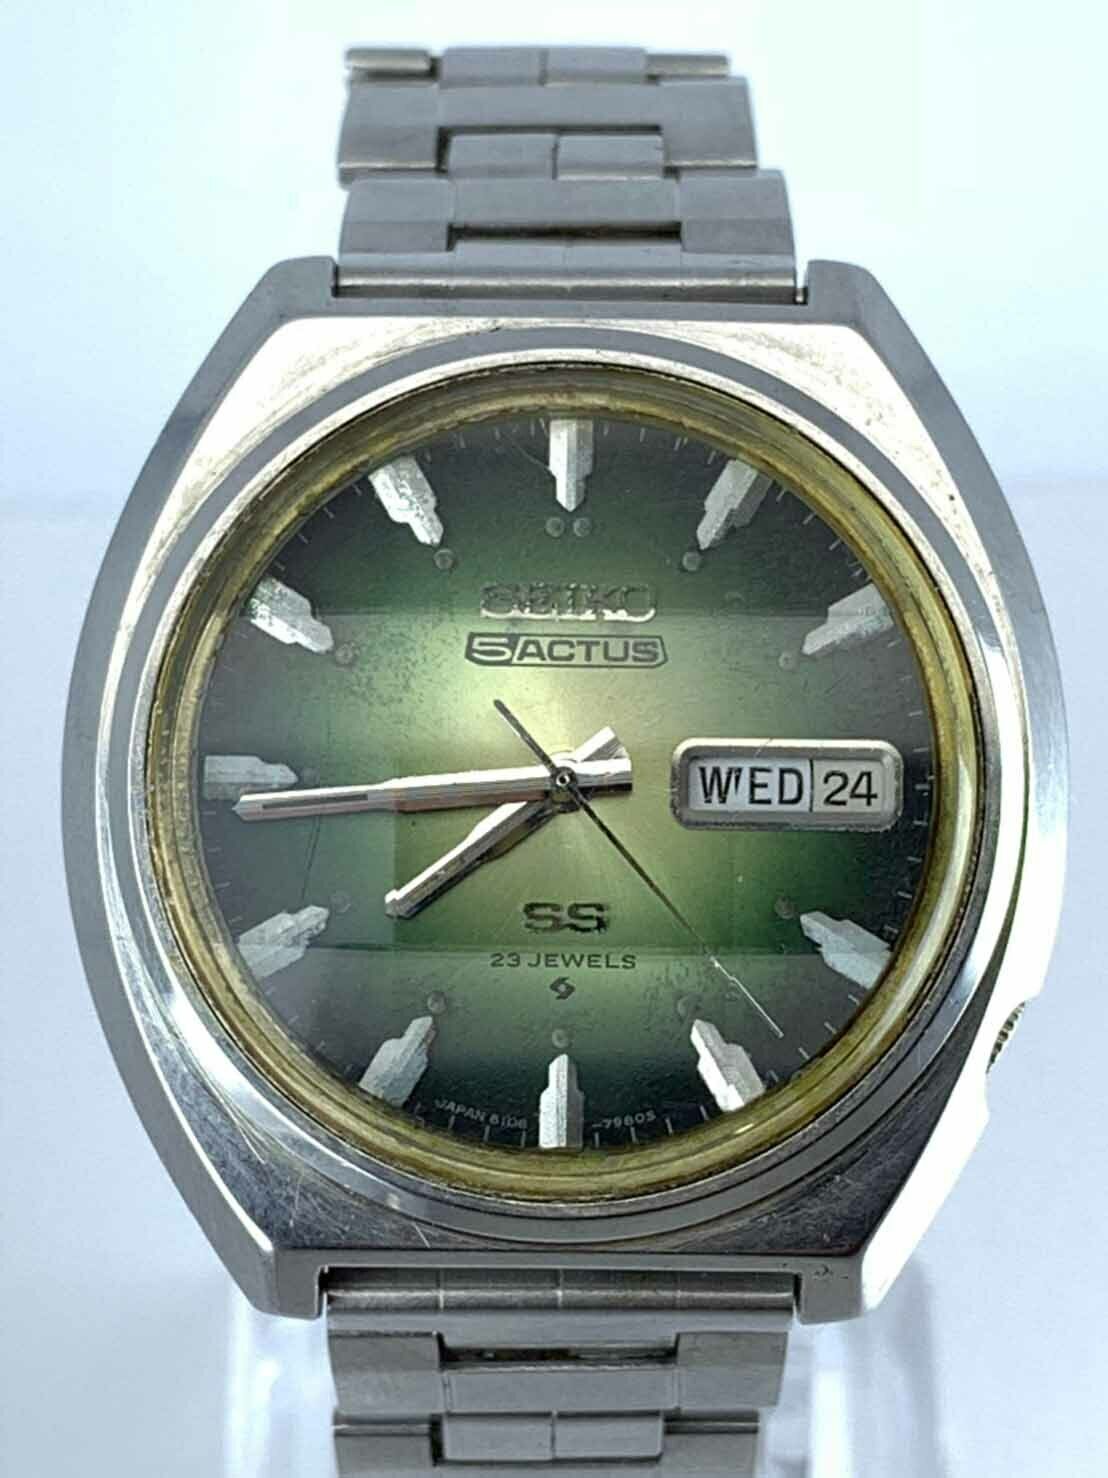 1973 Seiko 5 Actus 6106-7700 - 腕時計(アナログ)